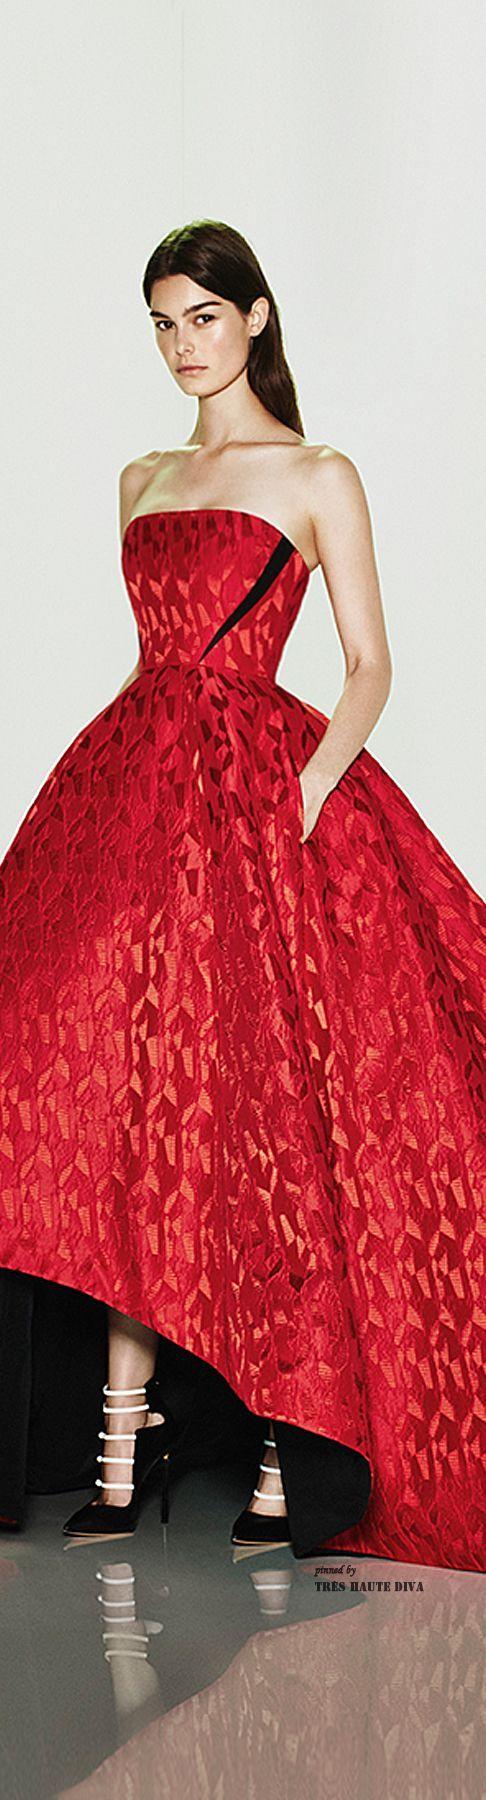 Wedding - Gowns...Ravishing Reds